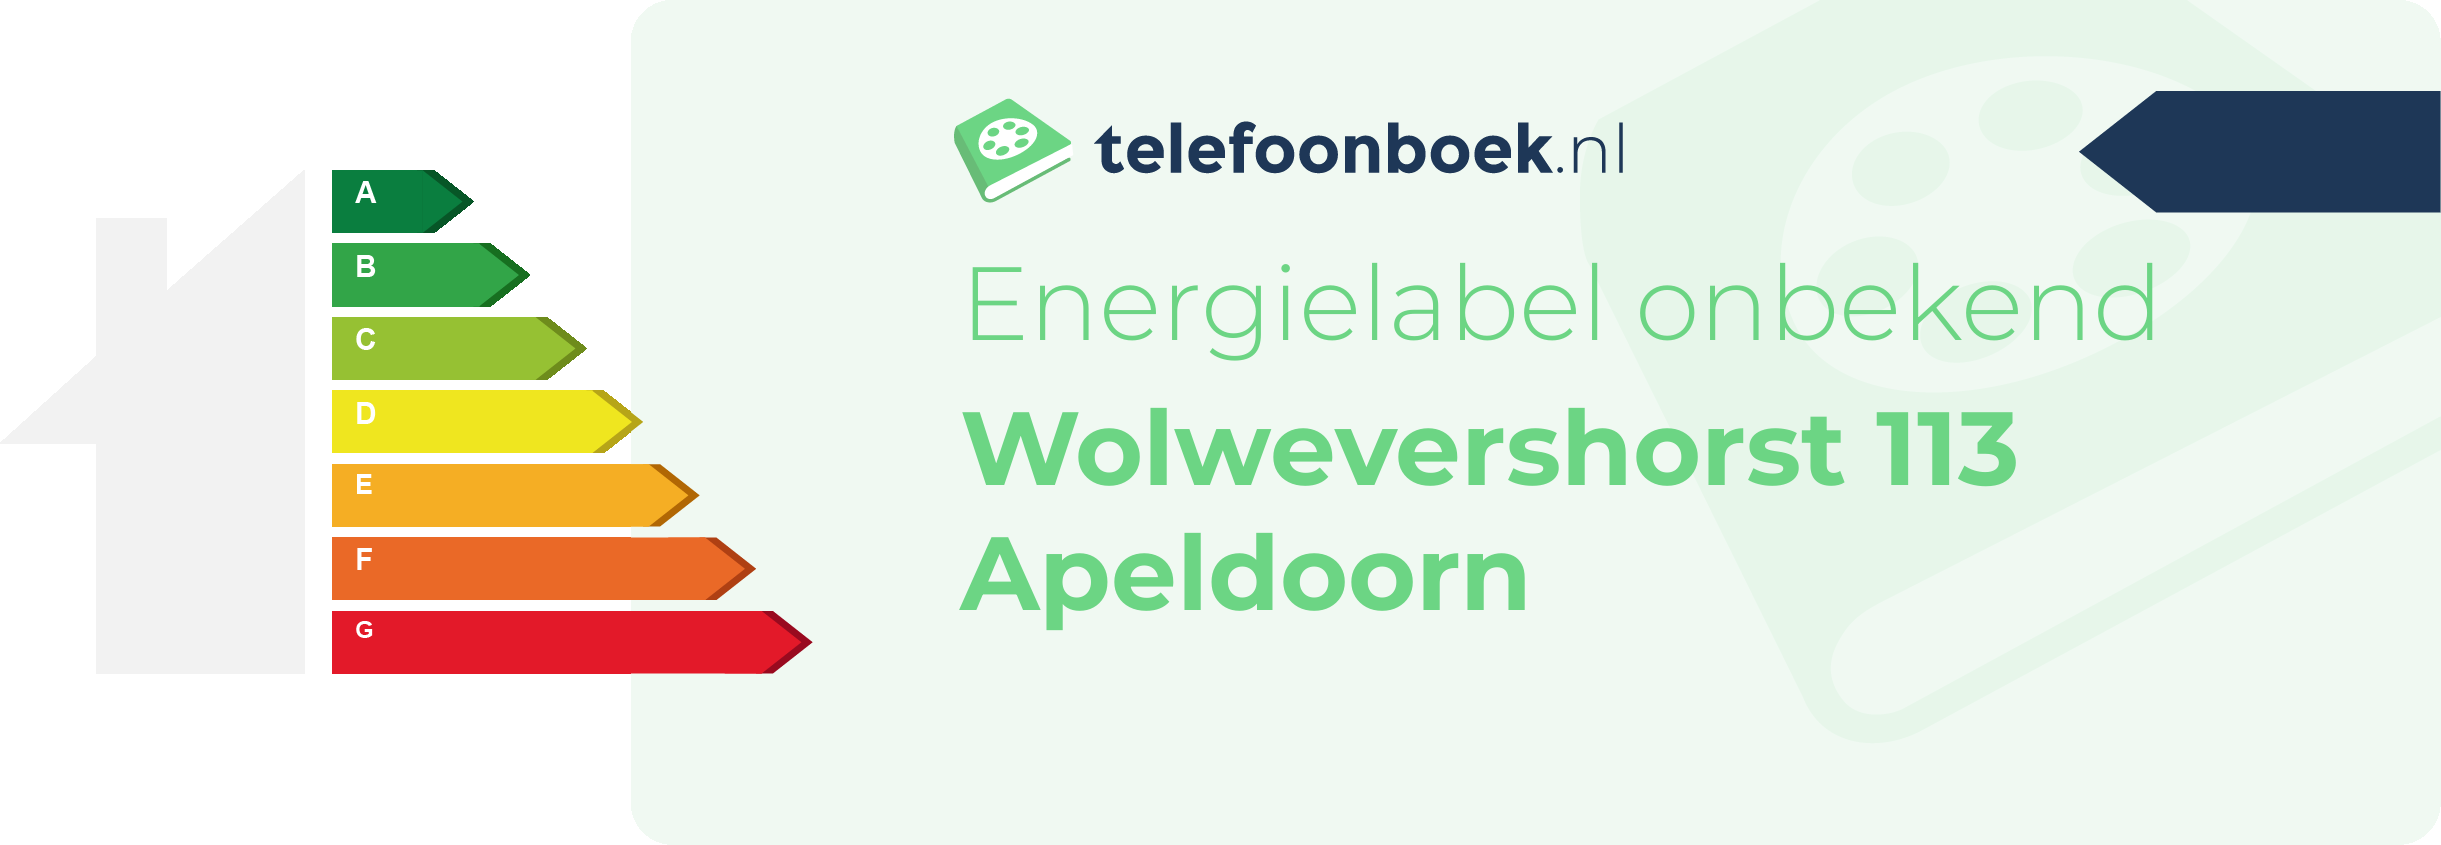 Energielabel Wolwevershorst 113 Apeldoorn